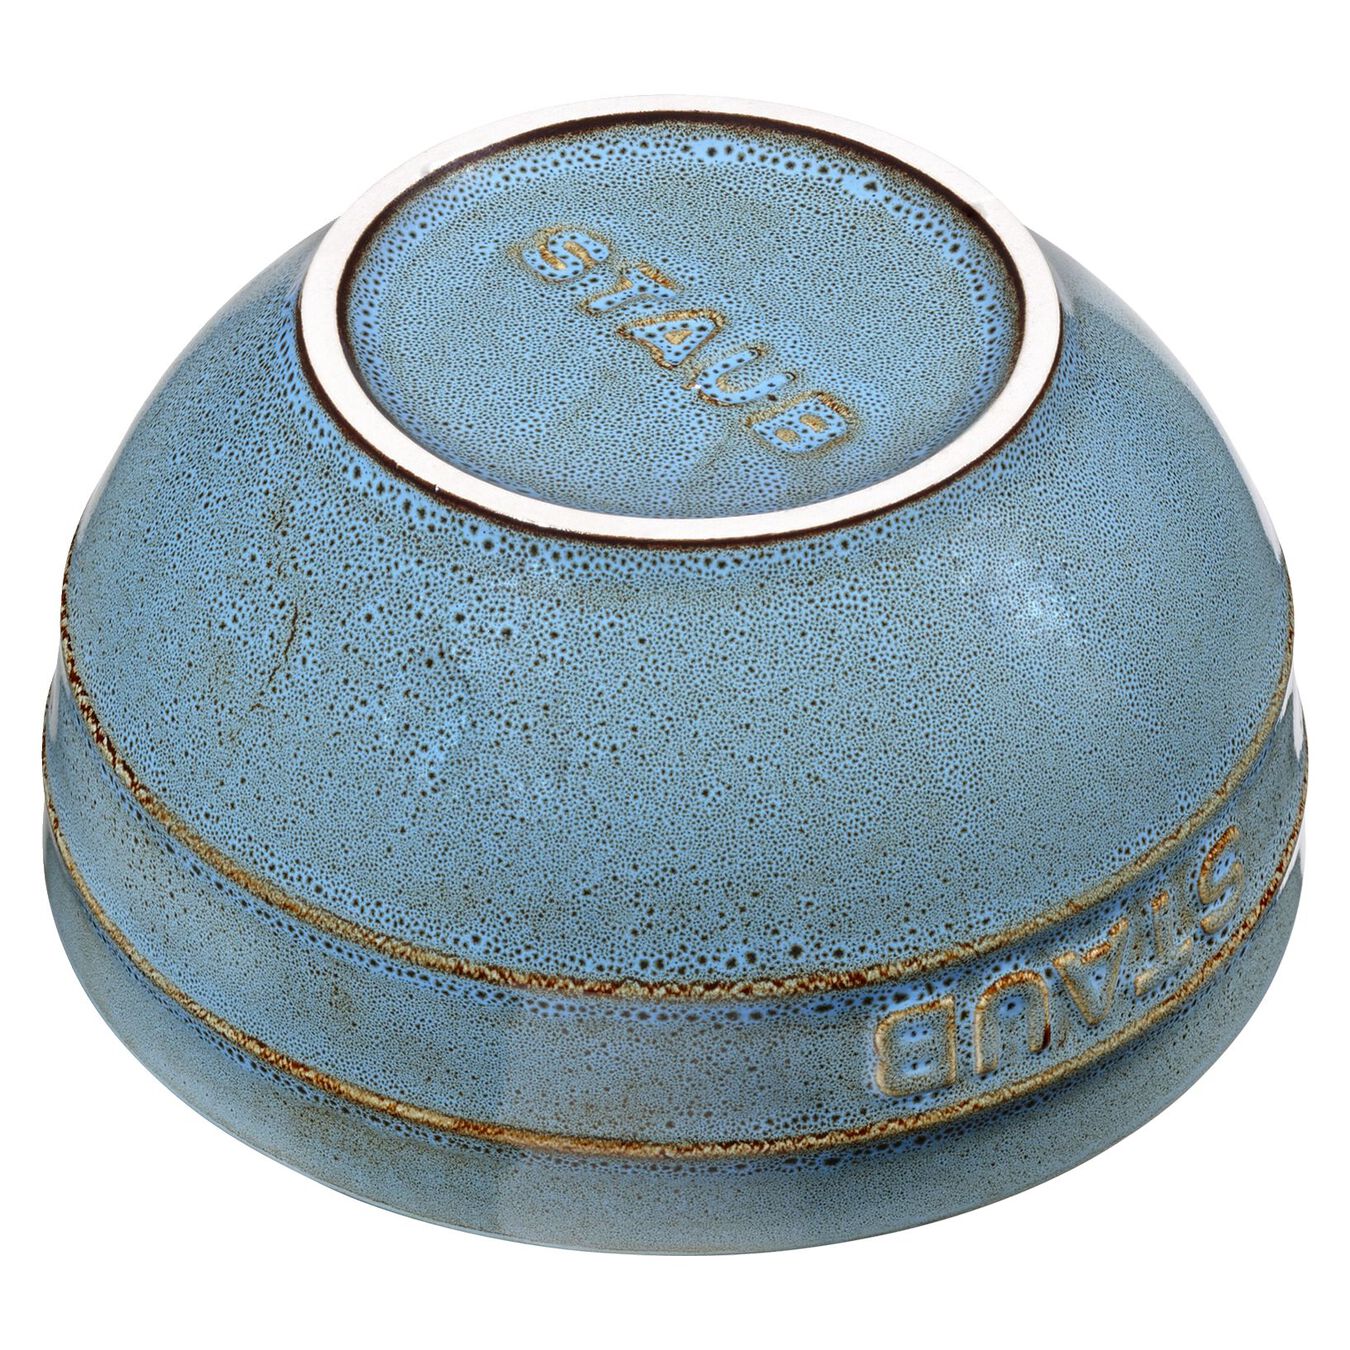 12 cm round Ceramic Bowl ancient-turquoise,,large 2